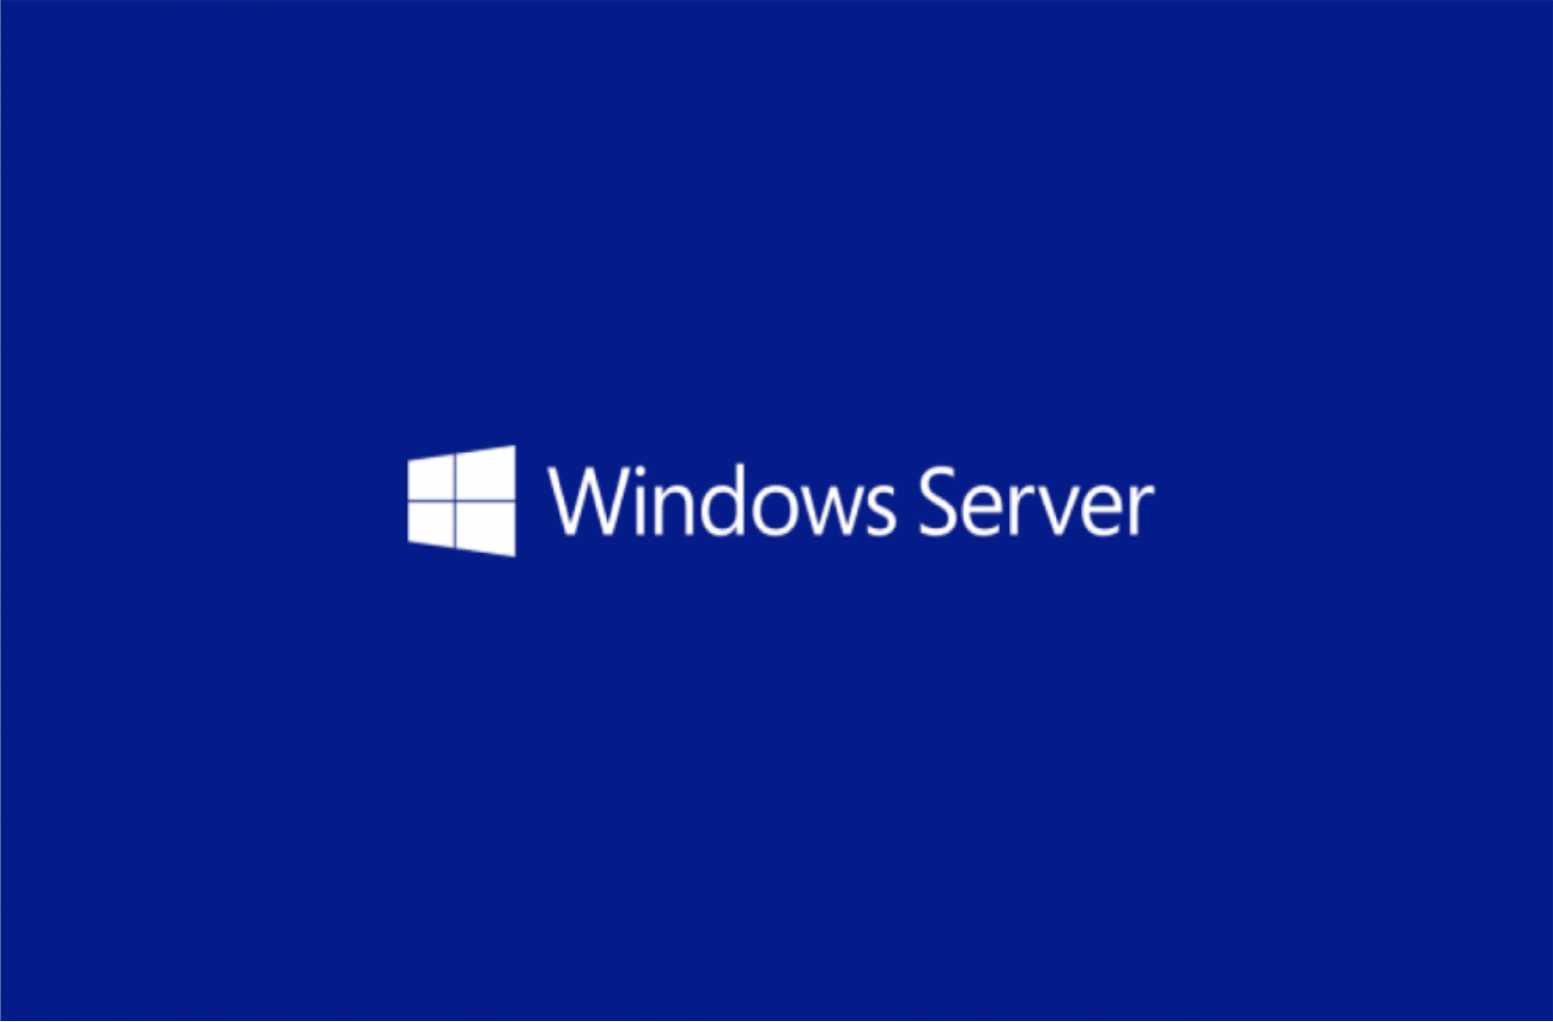 Windows английская версия. MS Windows Server 2019. MS Windows Server 2019 Standard. Логотип виндовс сервер. Рабочий стол Windows Server.